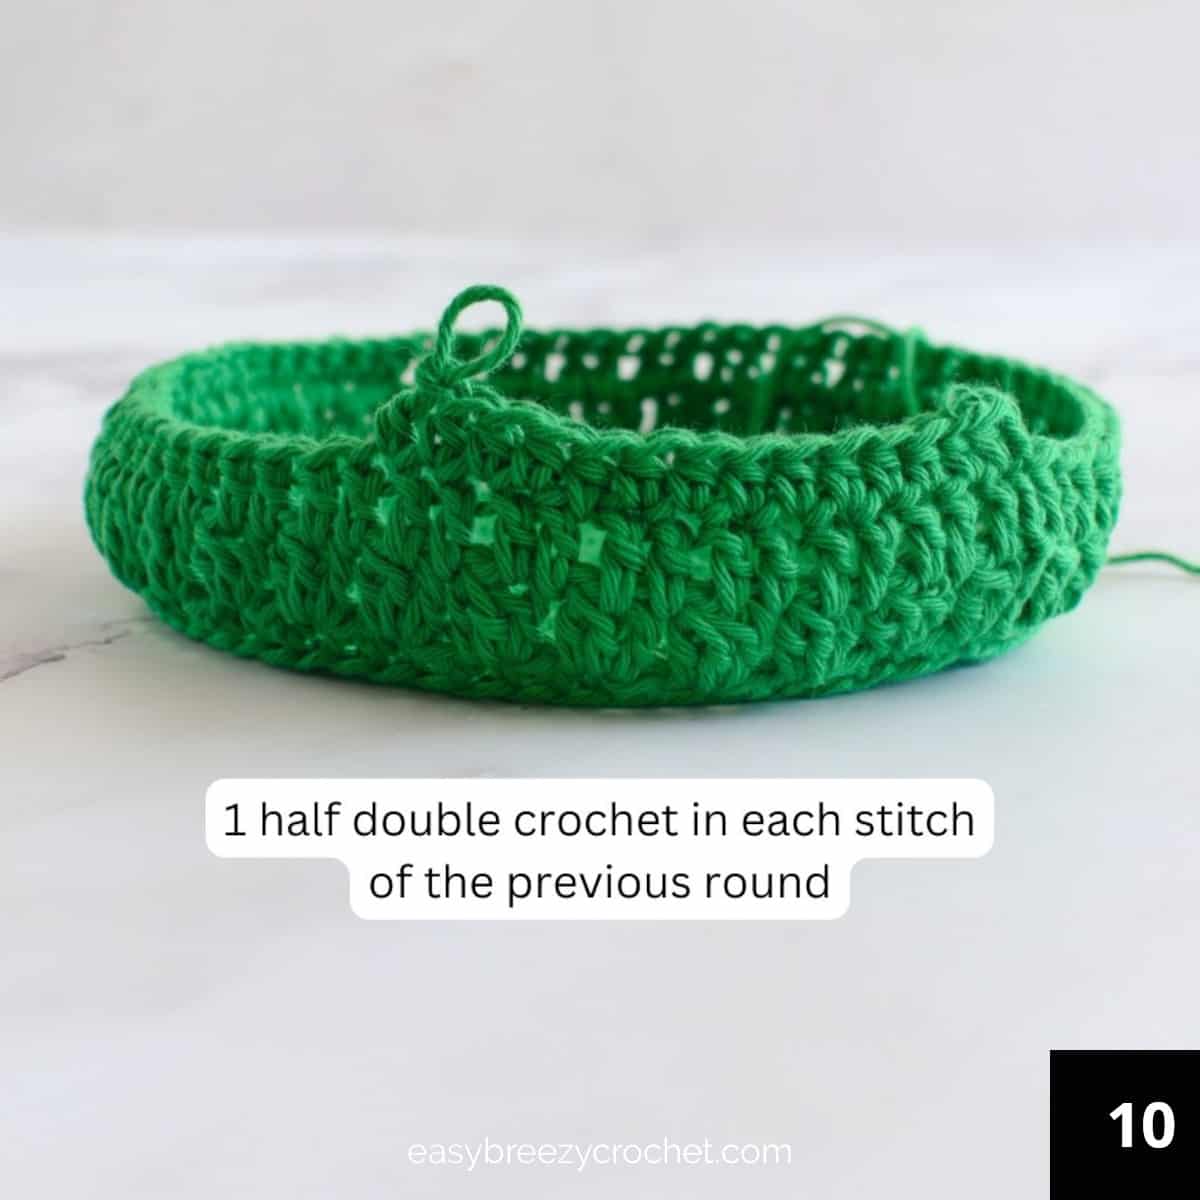 Round ten half double crochet stitches.